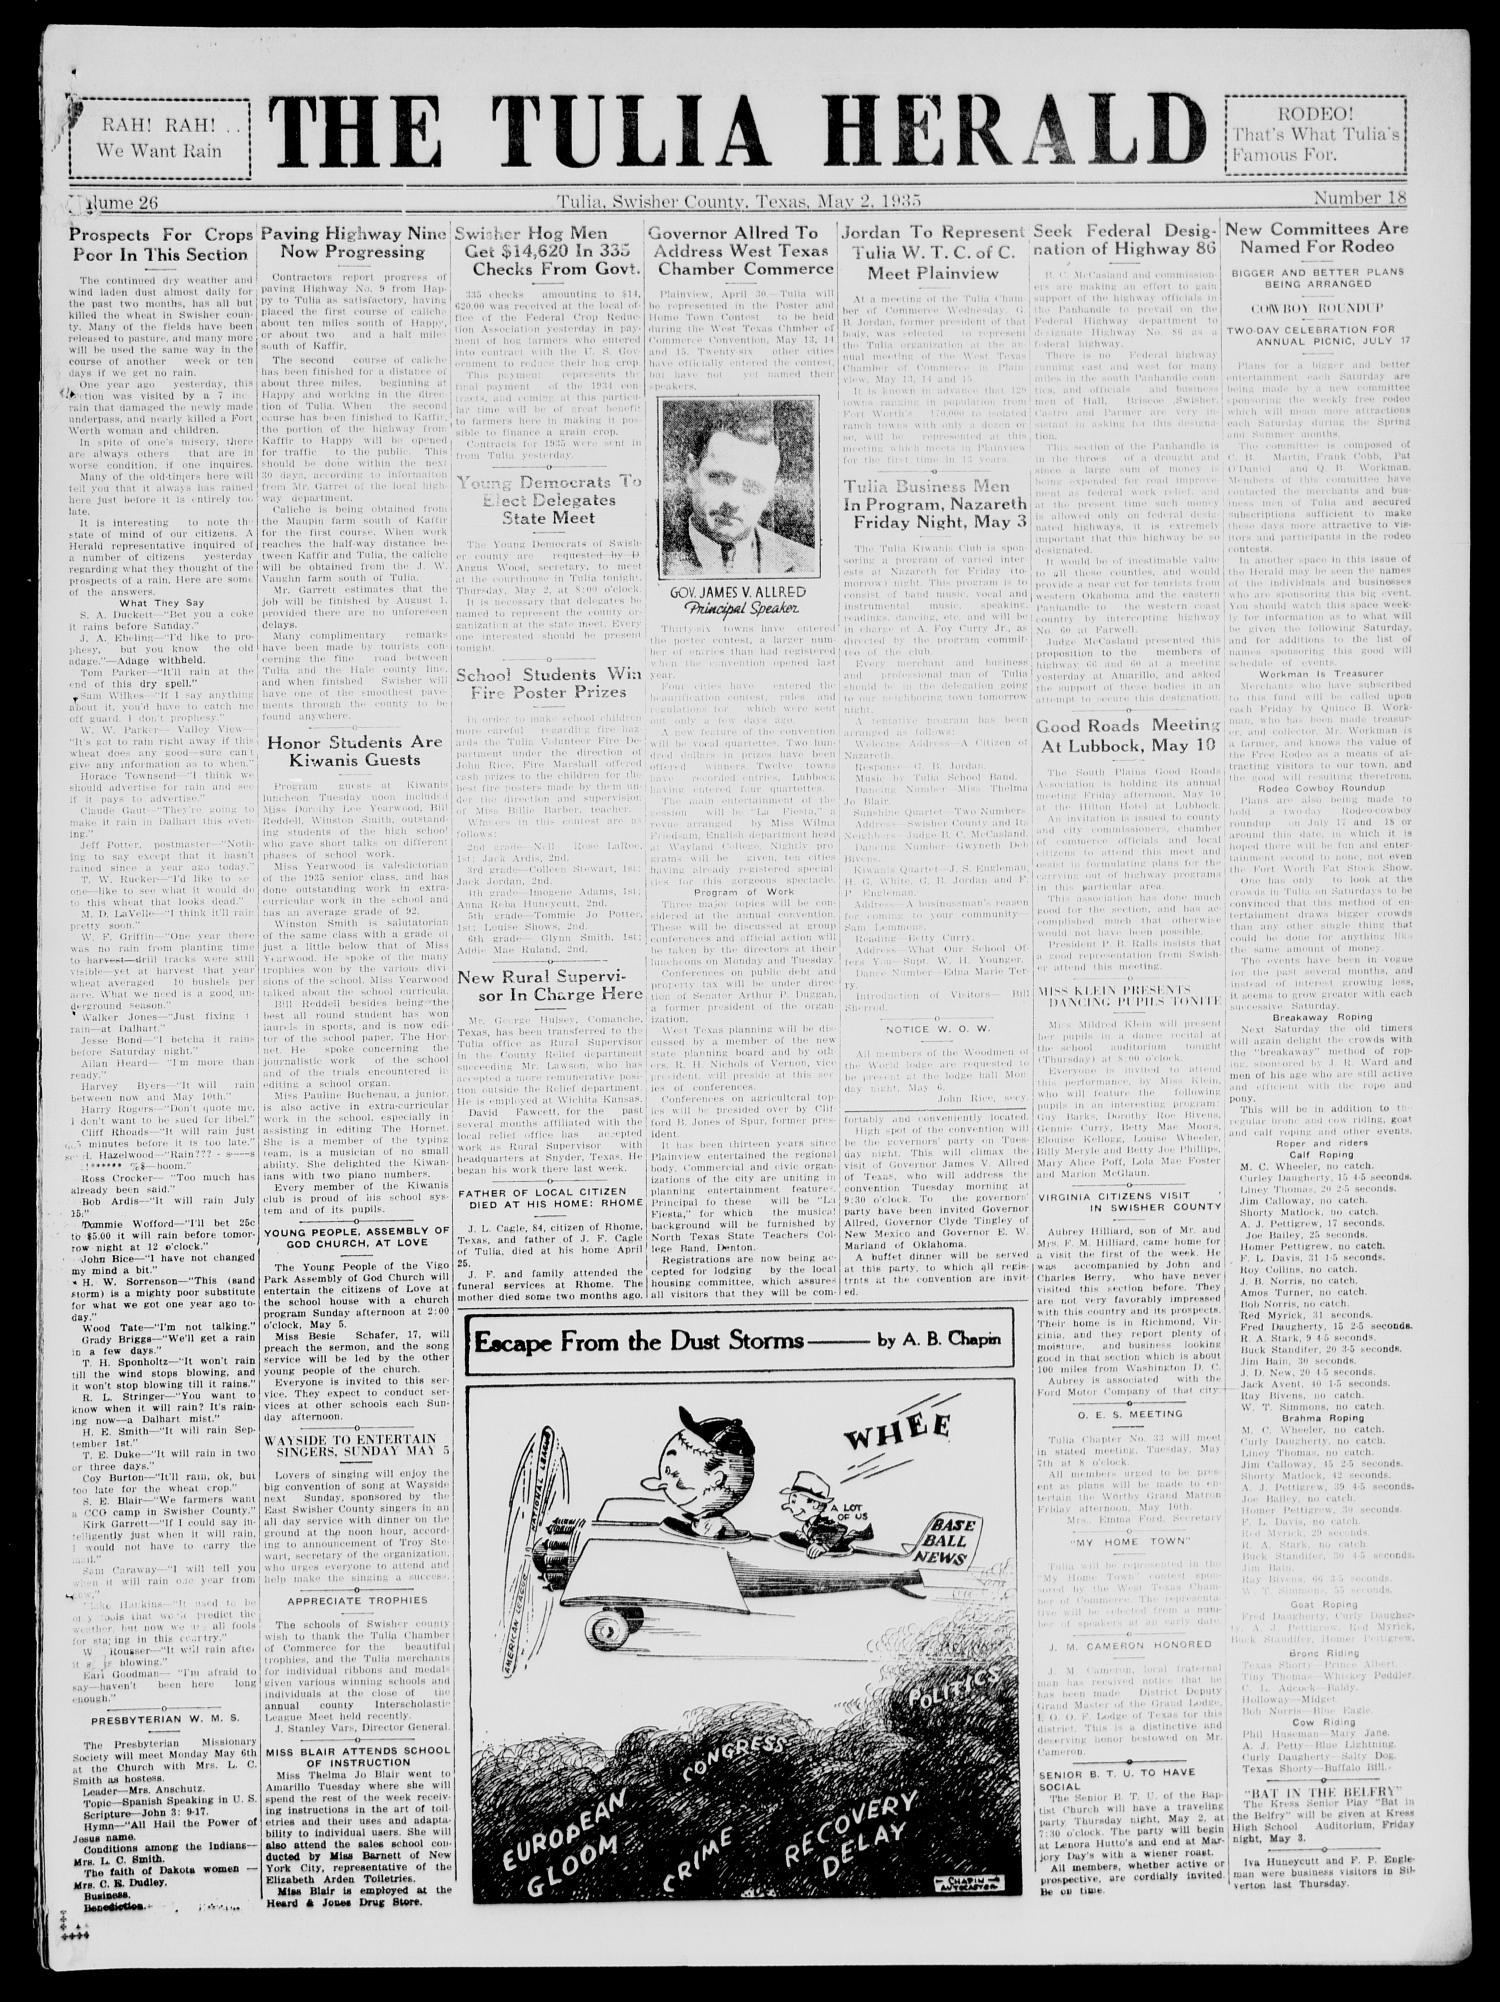 The Tulia Herald (Tulia, Tex), Vol. 26, No. 18, Ed. 1, Thursday, May 2, 1935
                                                
                                                    19
                                                